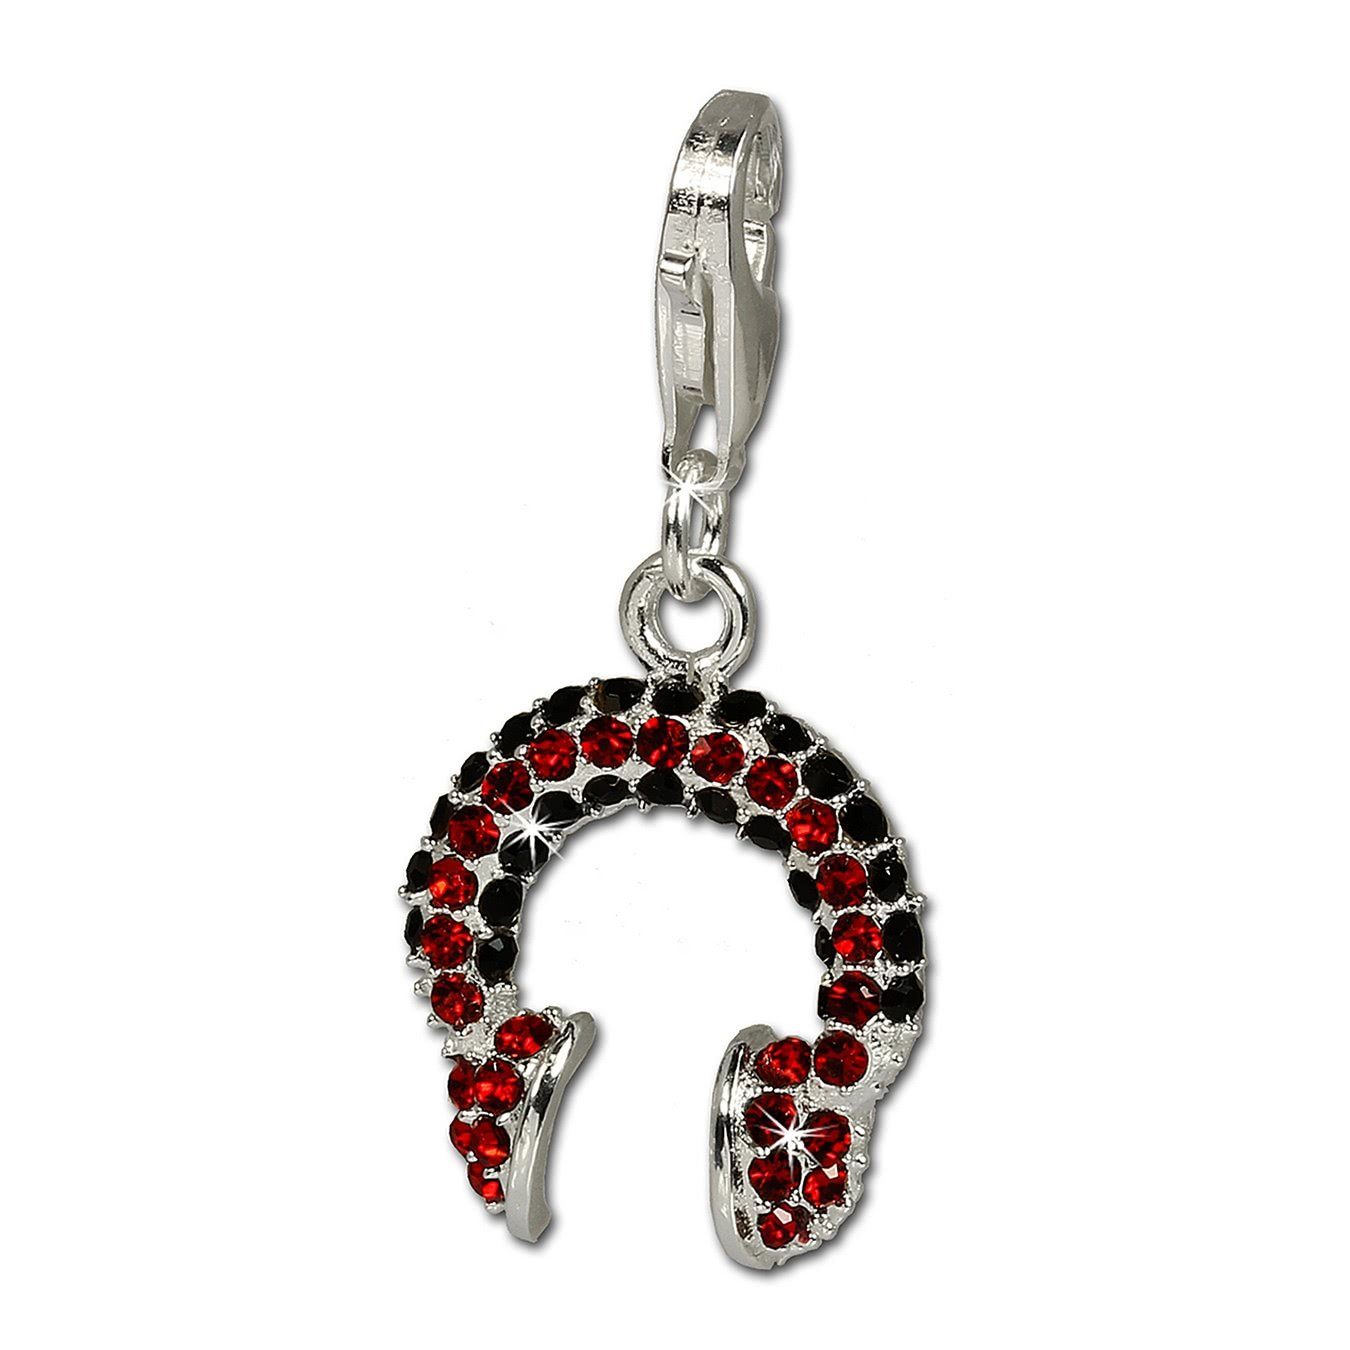 SilberDream Charm-Einhänger SilberDream Charm Kopfhörer, Charmsanhänger Kopfhörer, 925 Sterling Silber, Farbe: rot, schwarz im